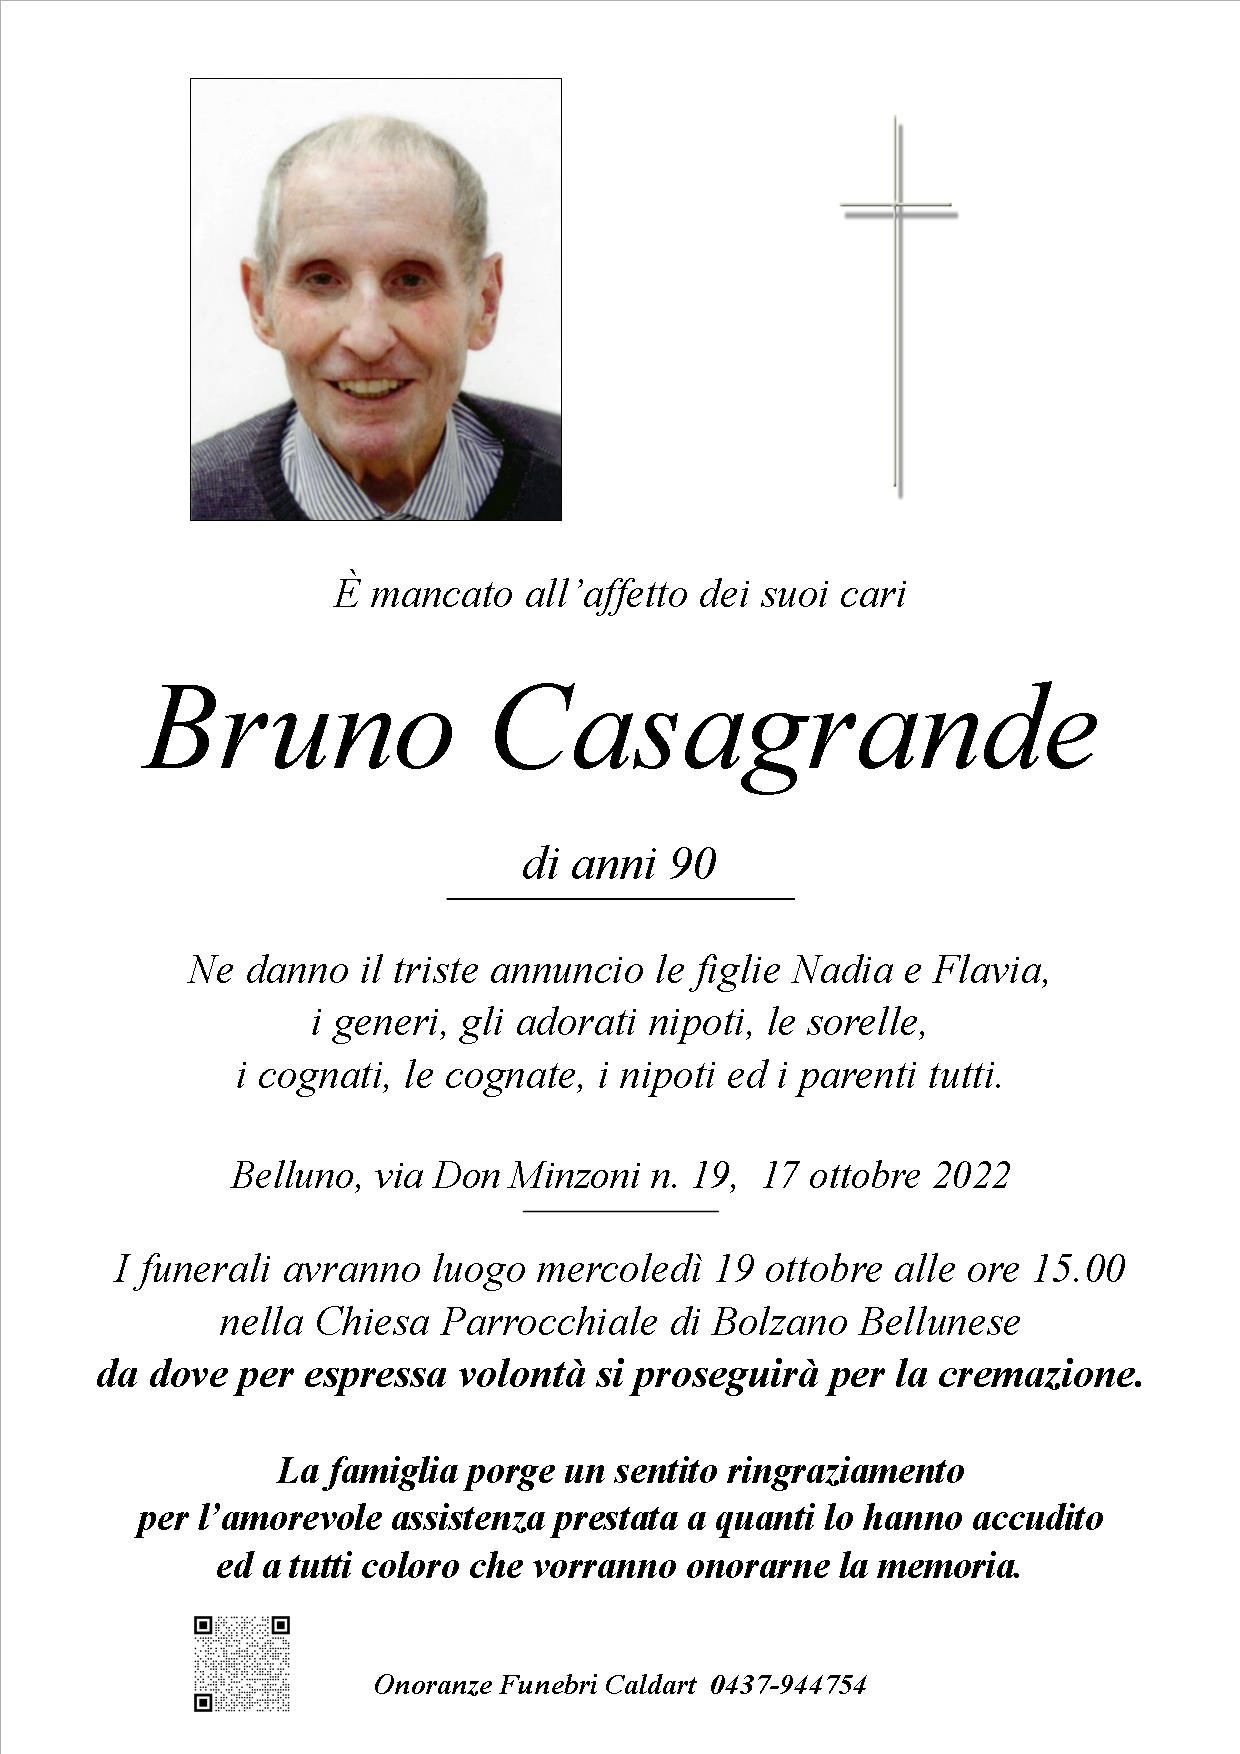 Casagrande Bruno